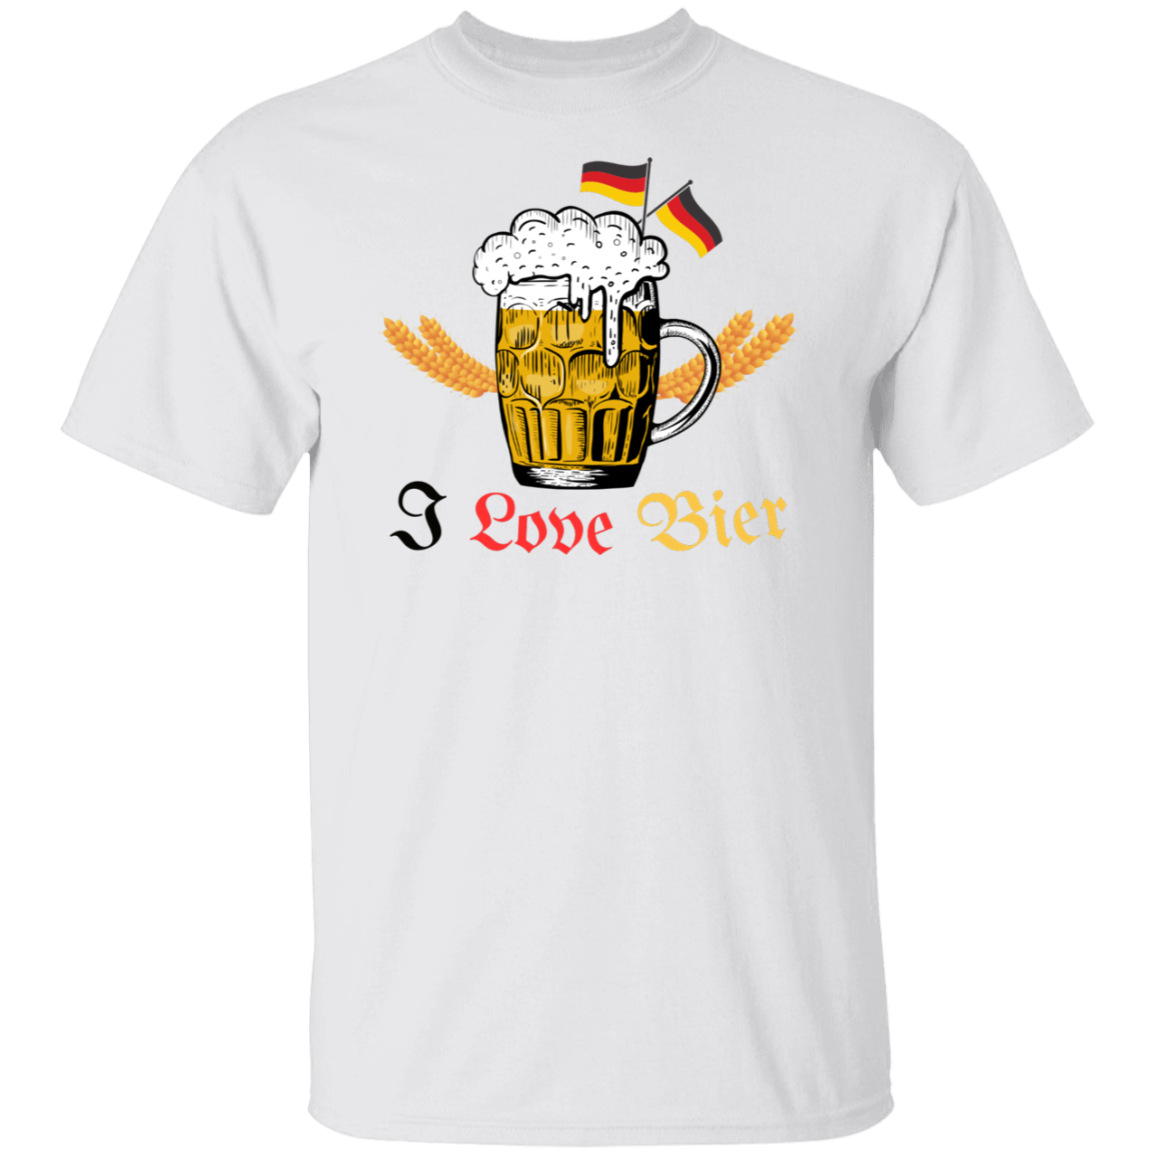 I Love Bier (Beer) - Men's T-Shirt